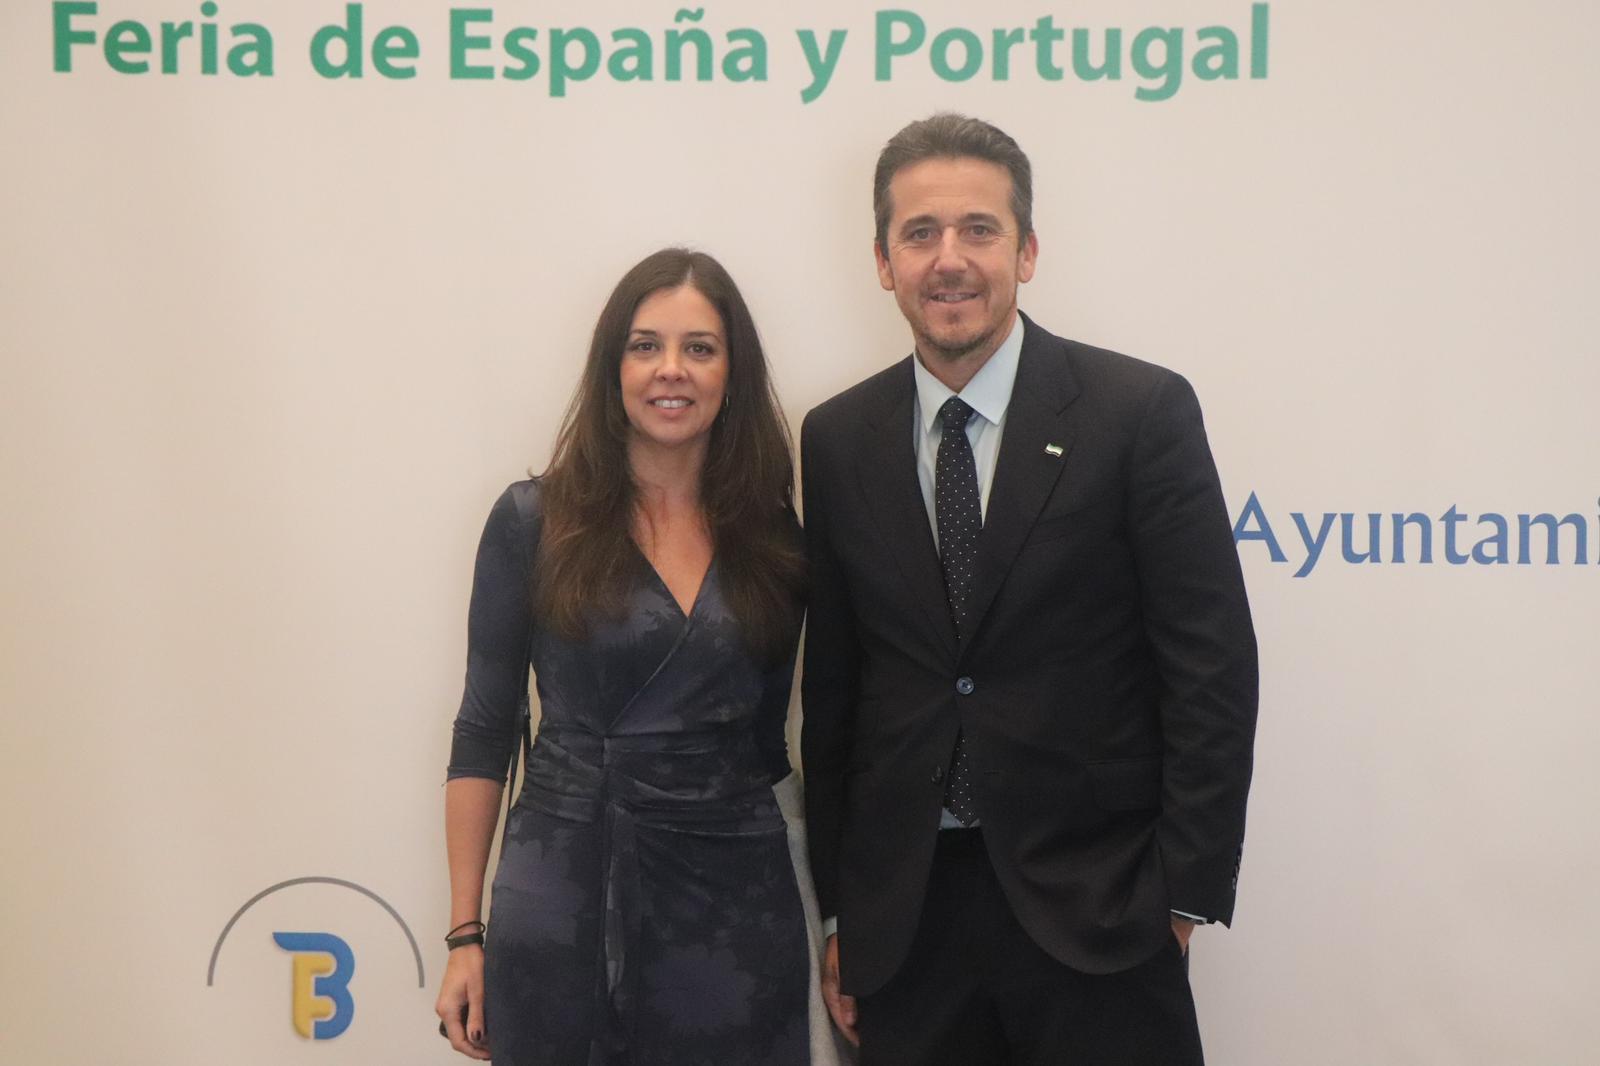 Image 1 of article La Junta de Extremadura refuerza la cooperación transfronteriza con Portugal a través de tres proyectos aprobados por la Comisión Europea